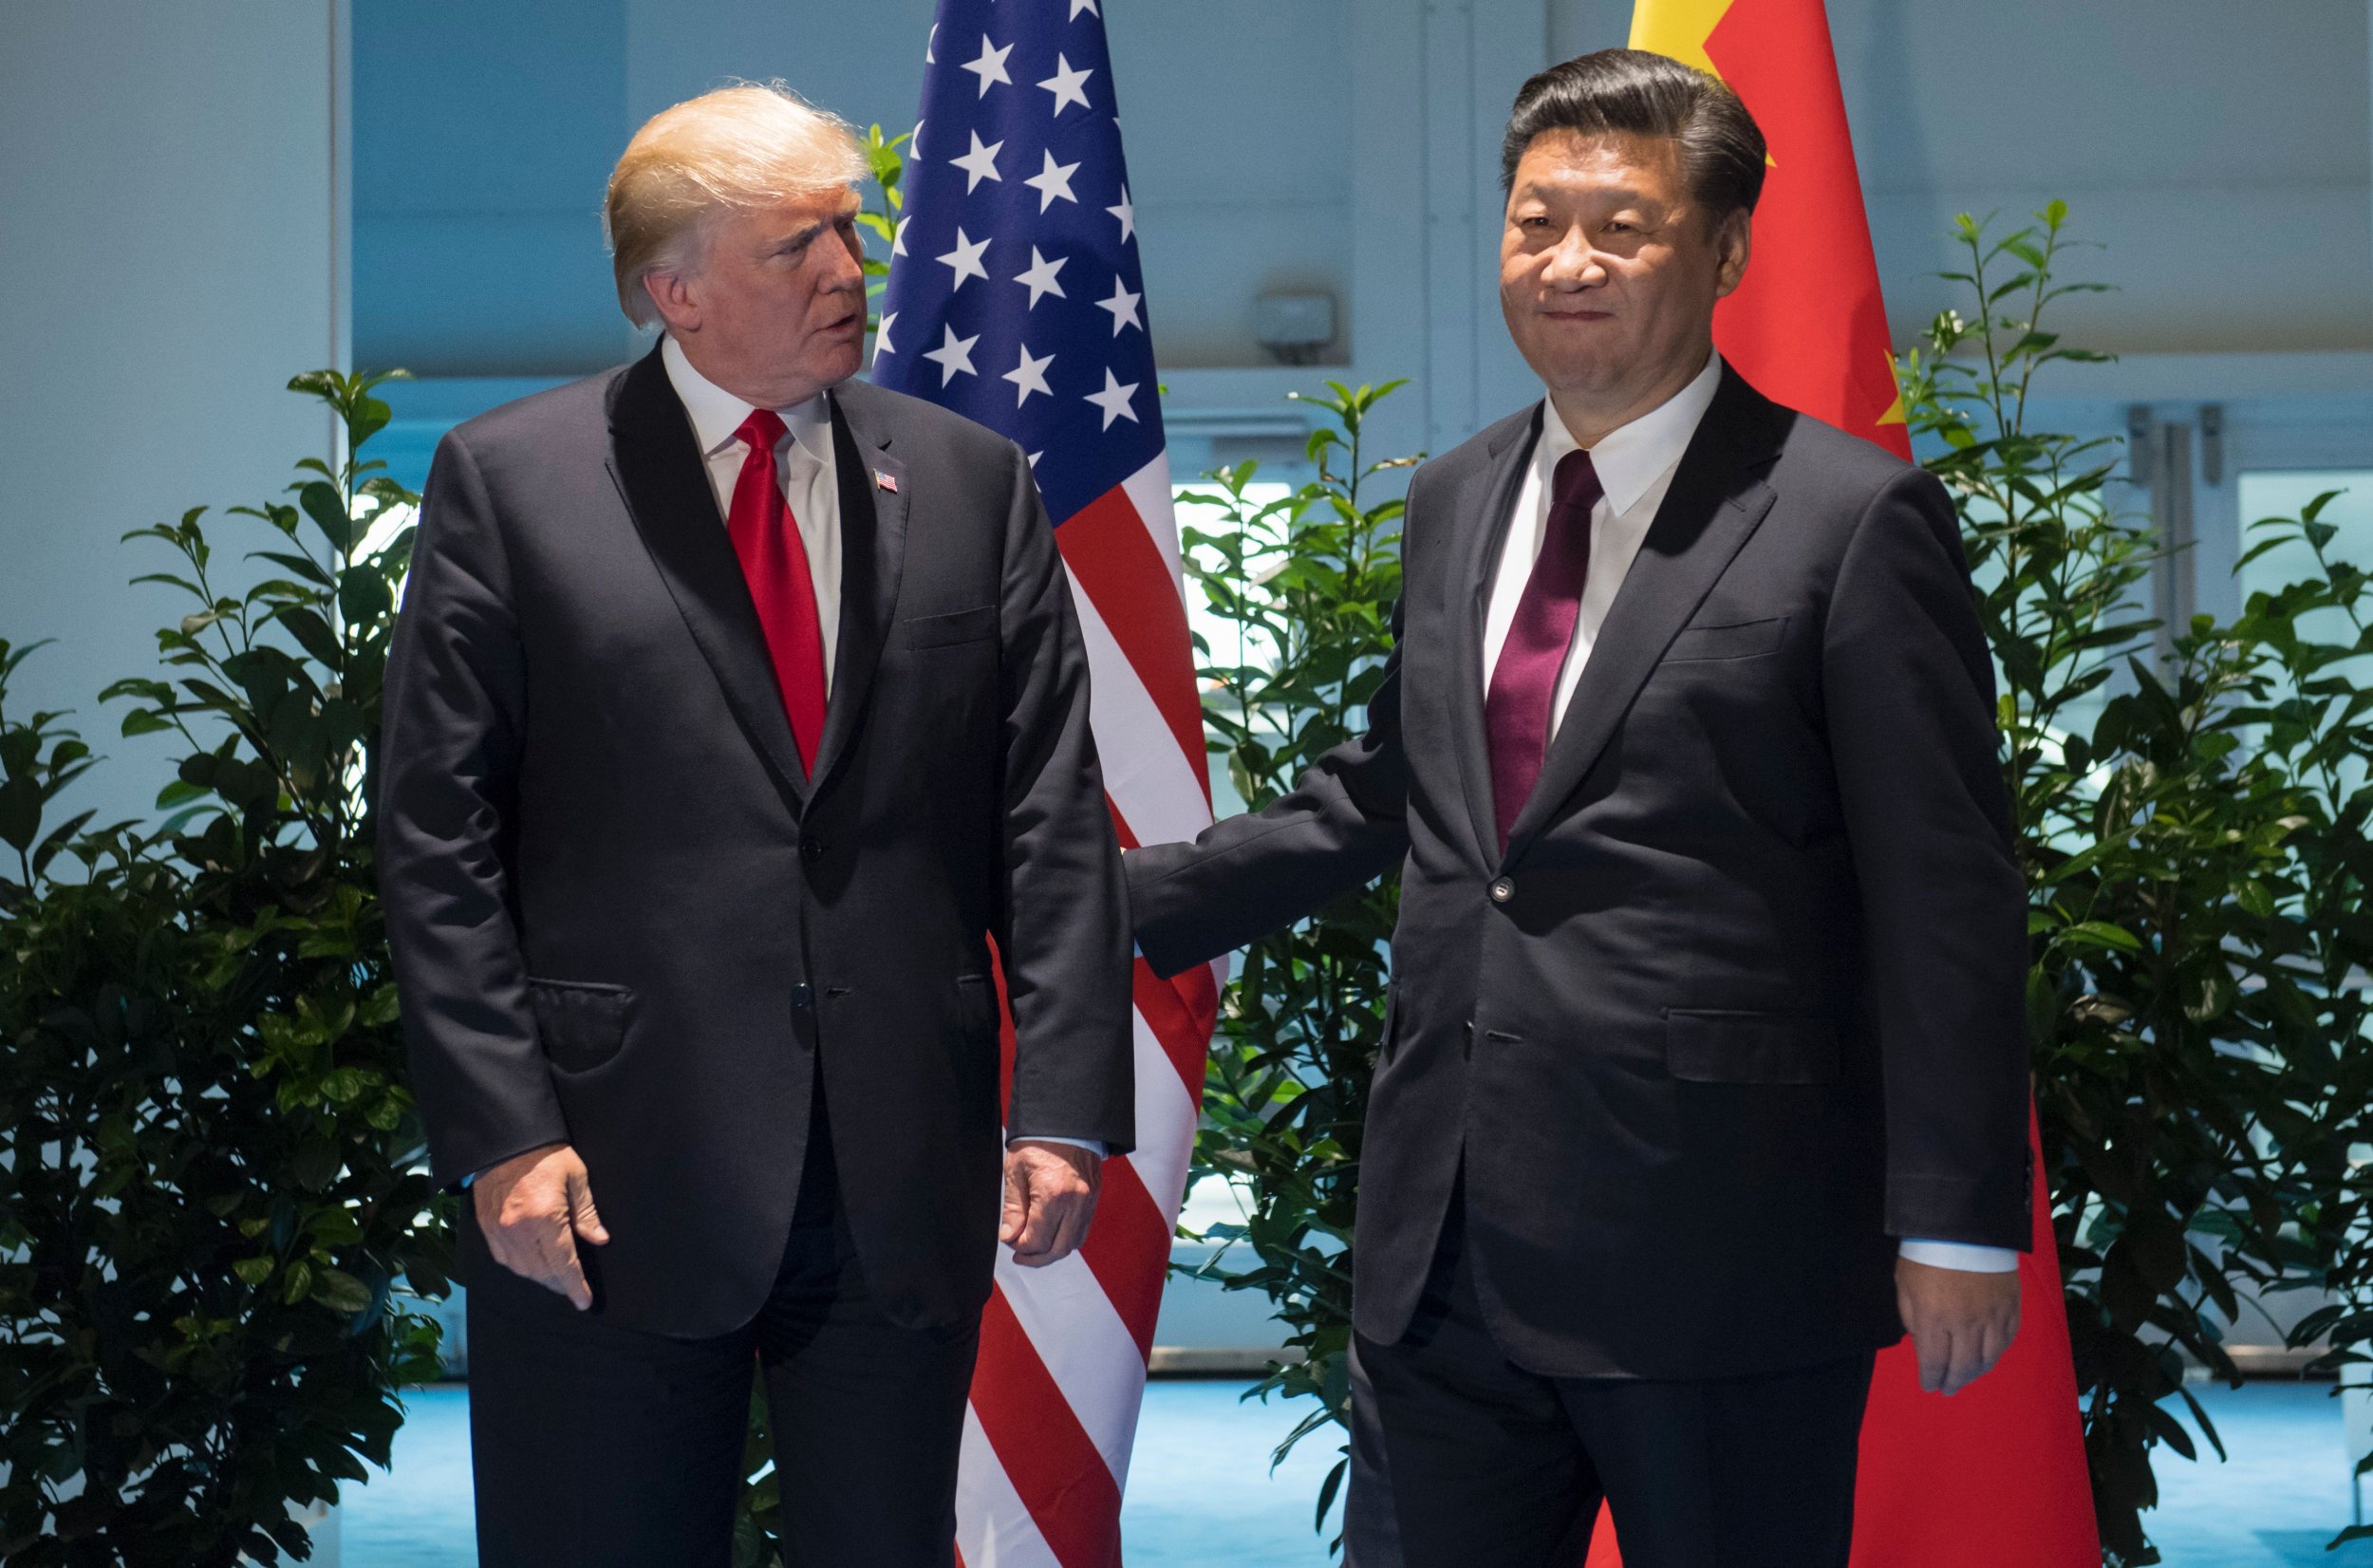 Trump meets Xi